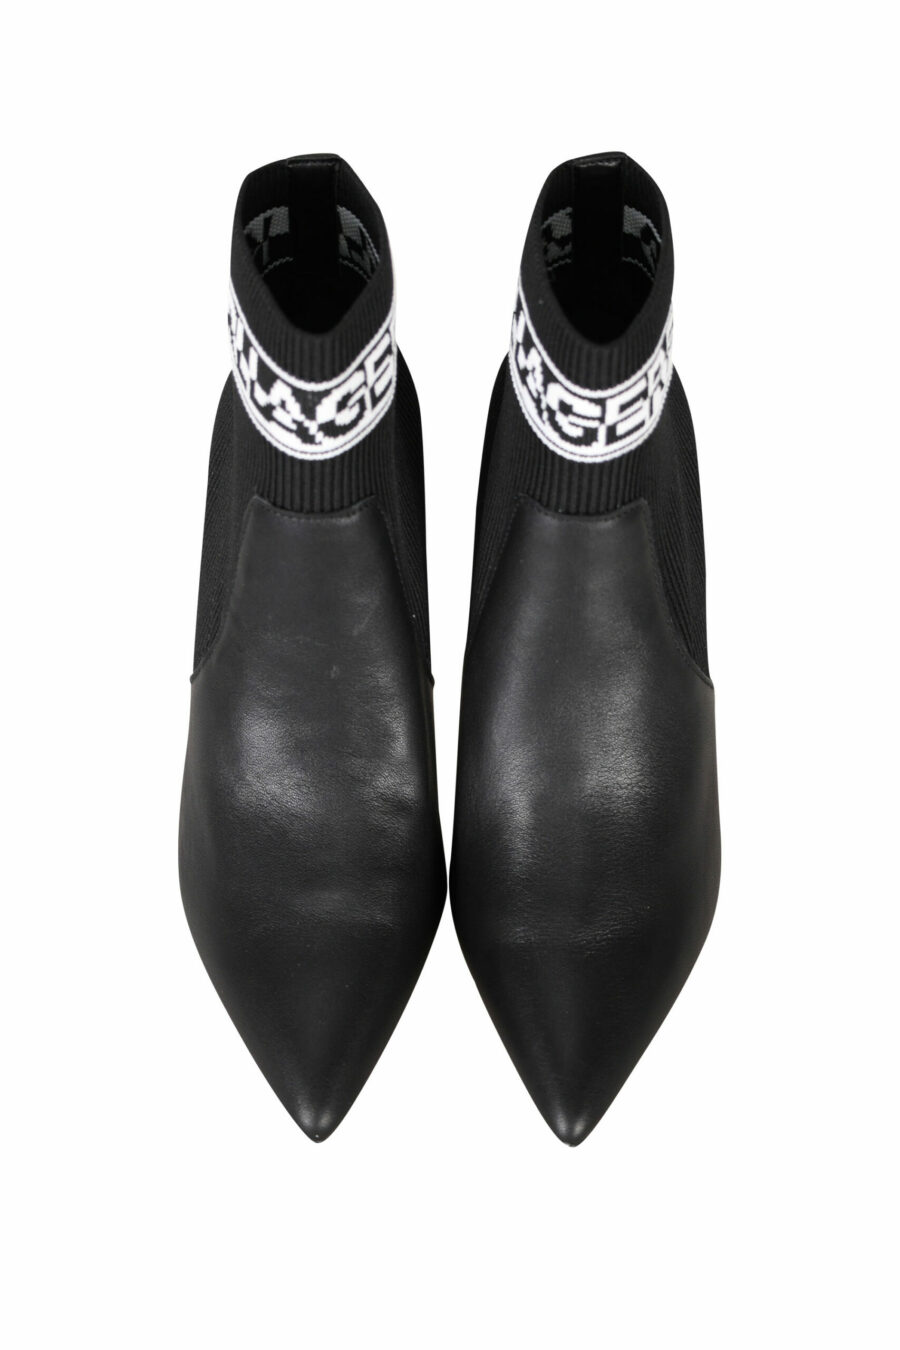 Botines negros "Pandara" estilo calcetin con tacon y logo - 5059529280429 3 scaled